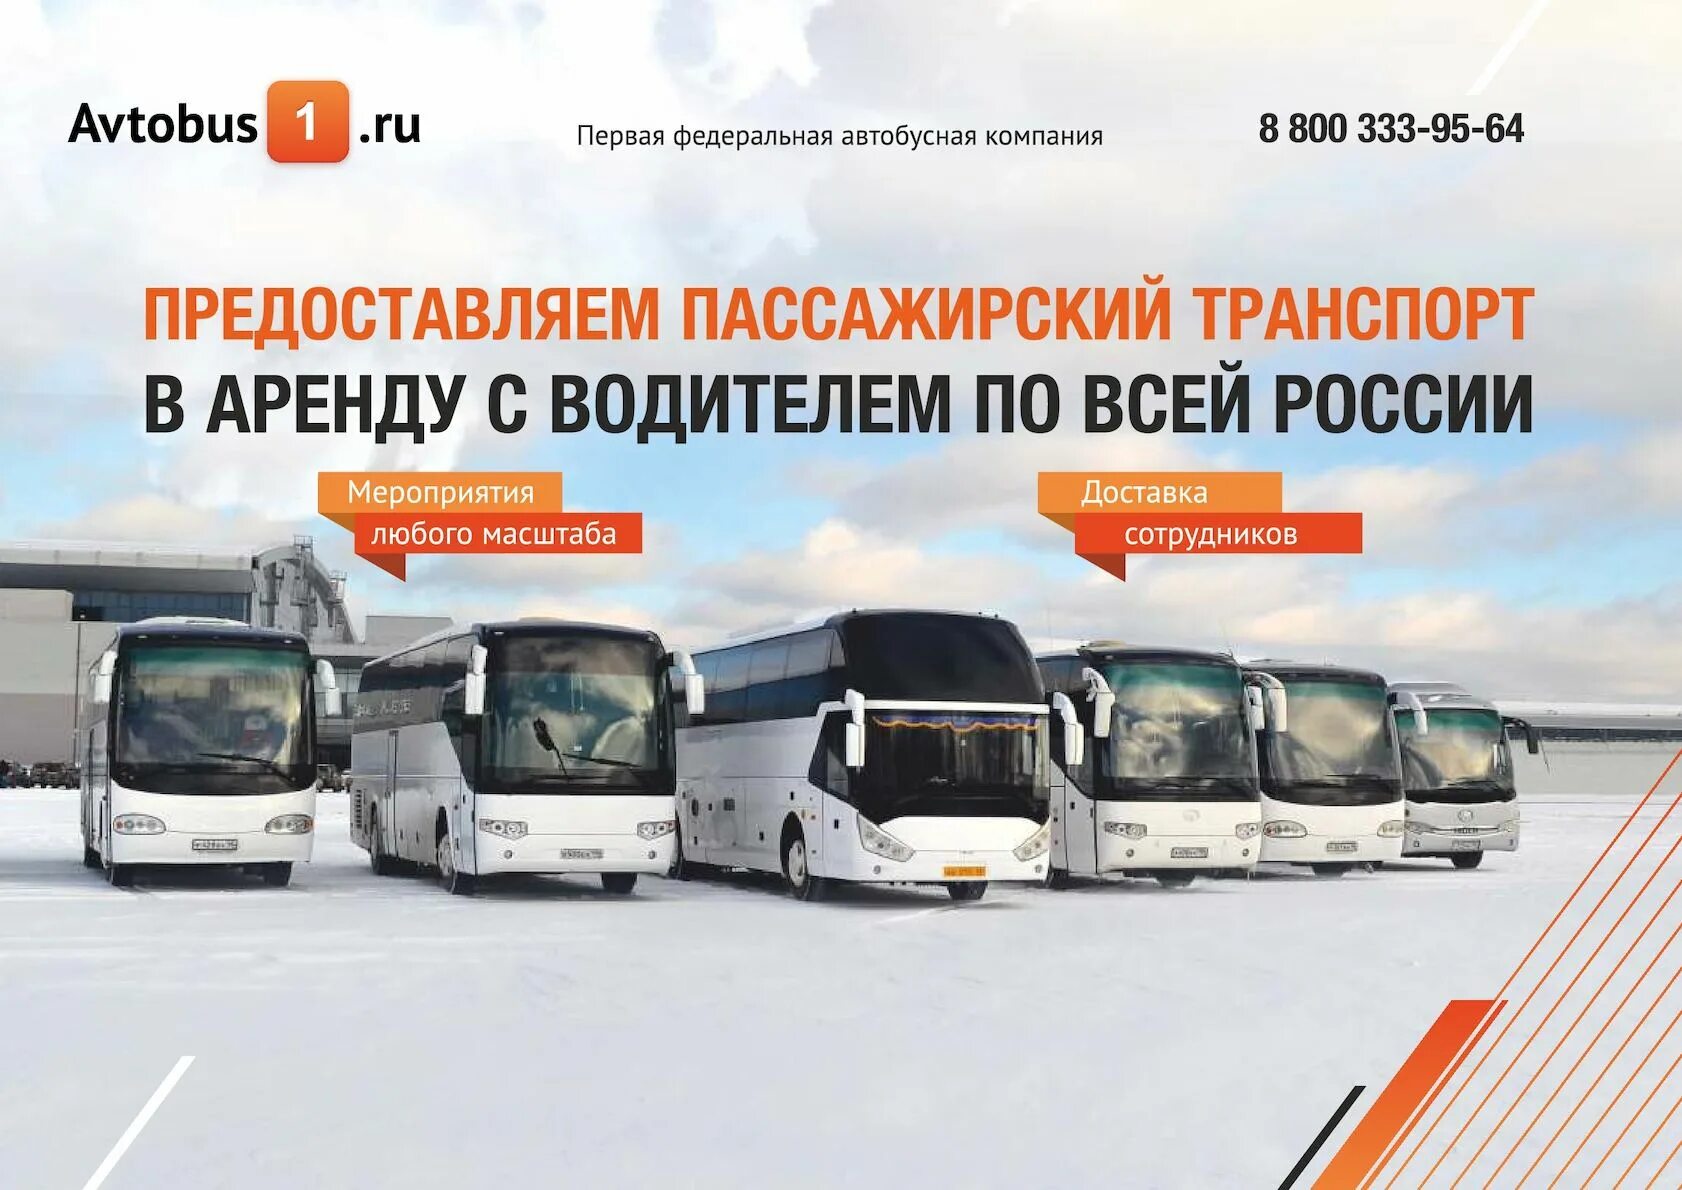 Автобусная компания. Автобусная транспортная компания. Транспортная компания автобусы. Первая транспортная компания автобусы.